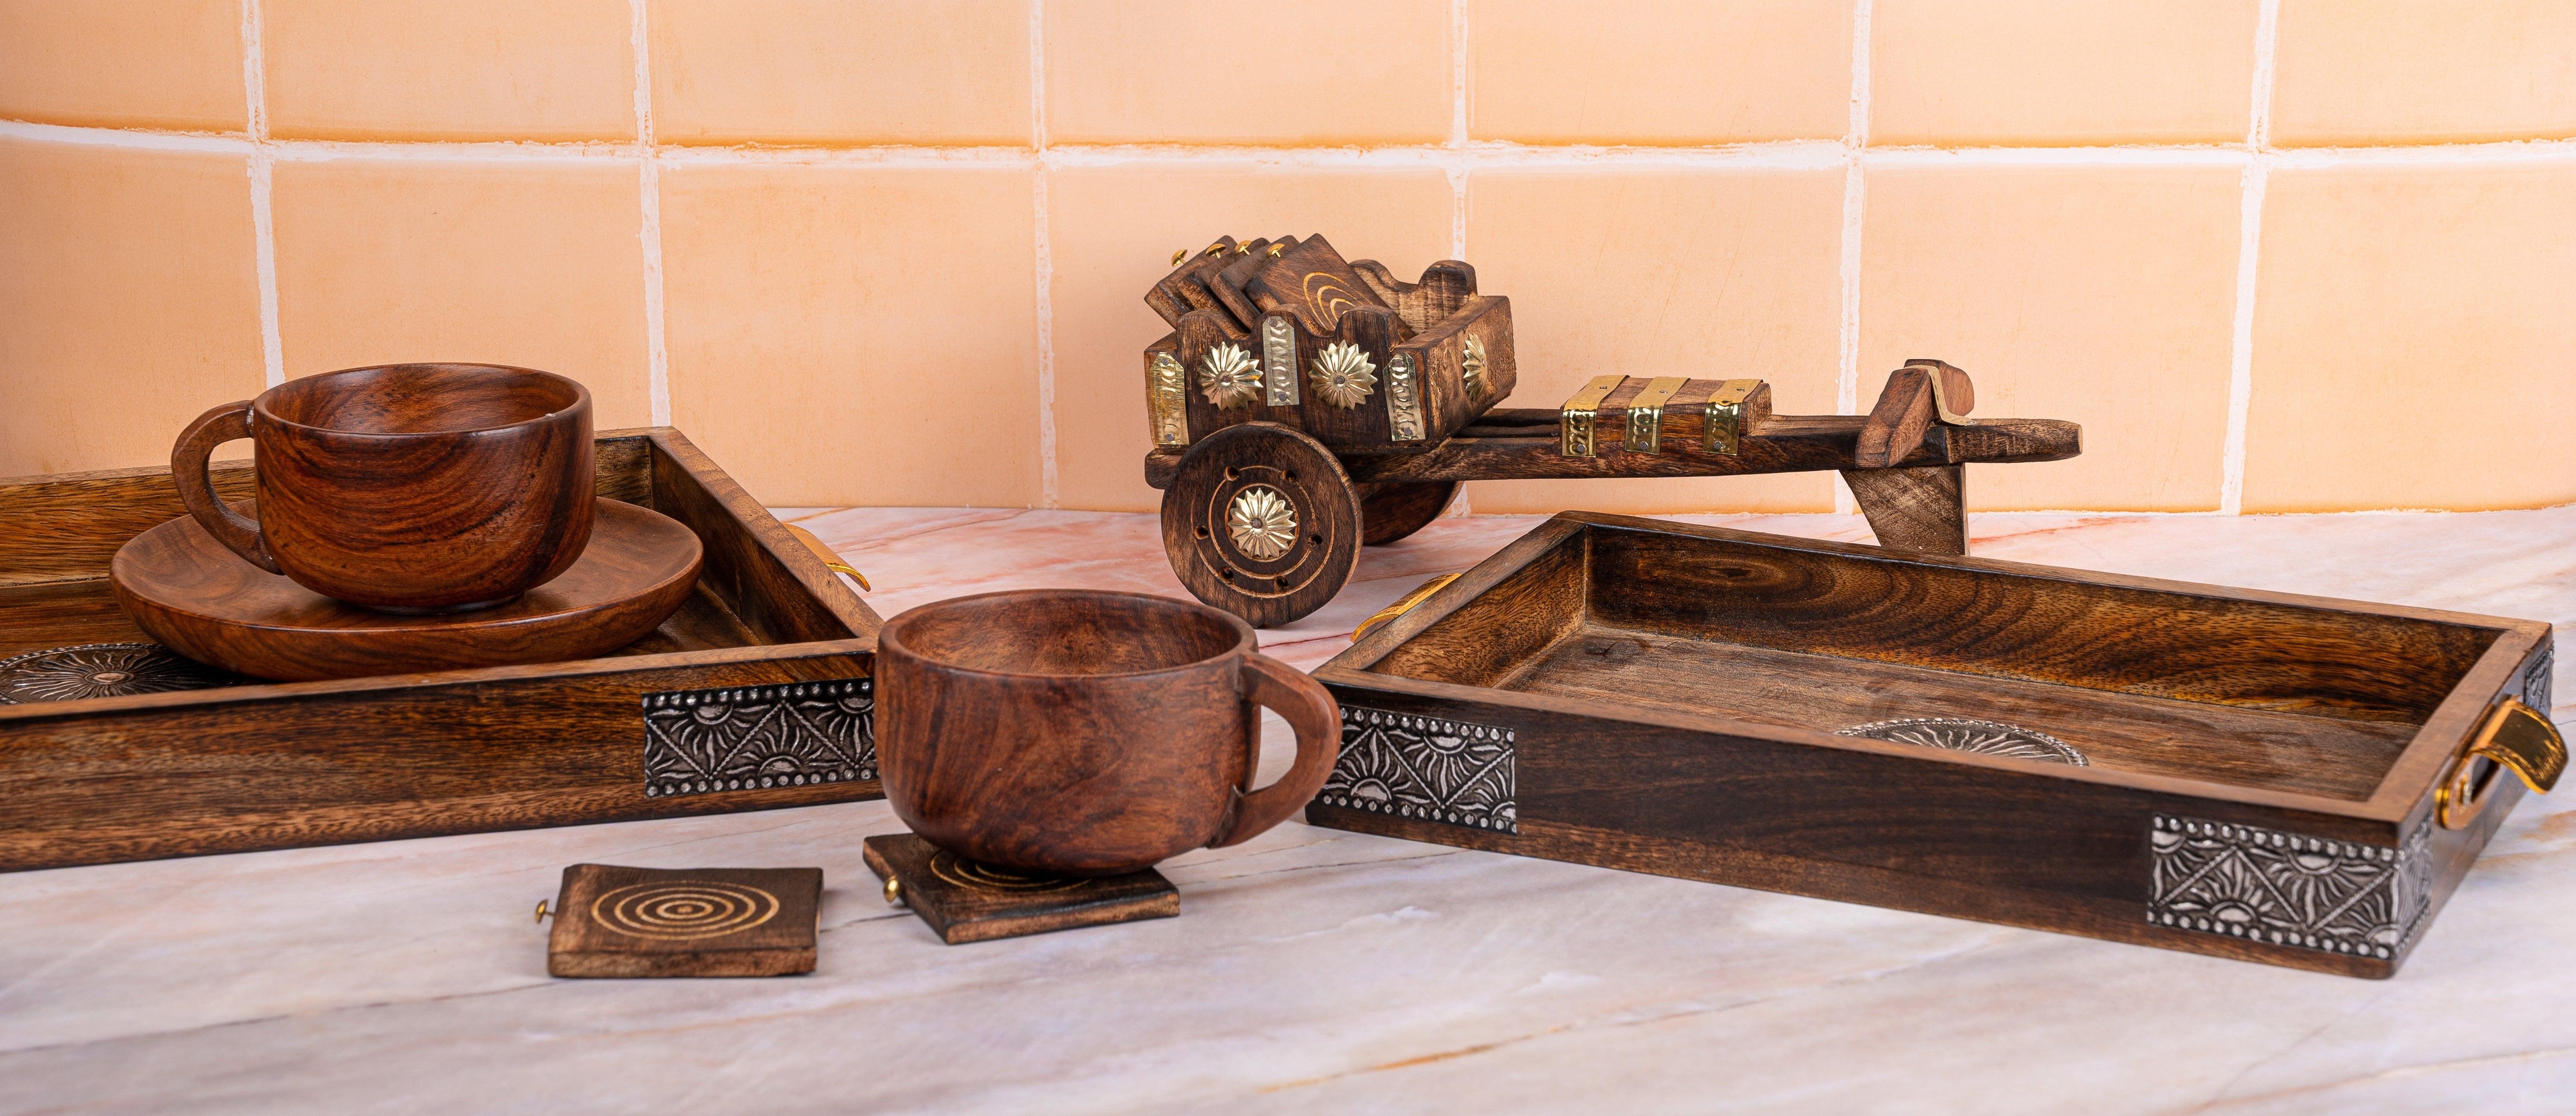 Wooden Handicraft - The Heritage Artifacts